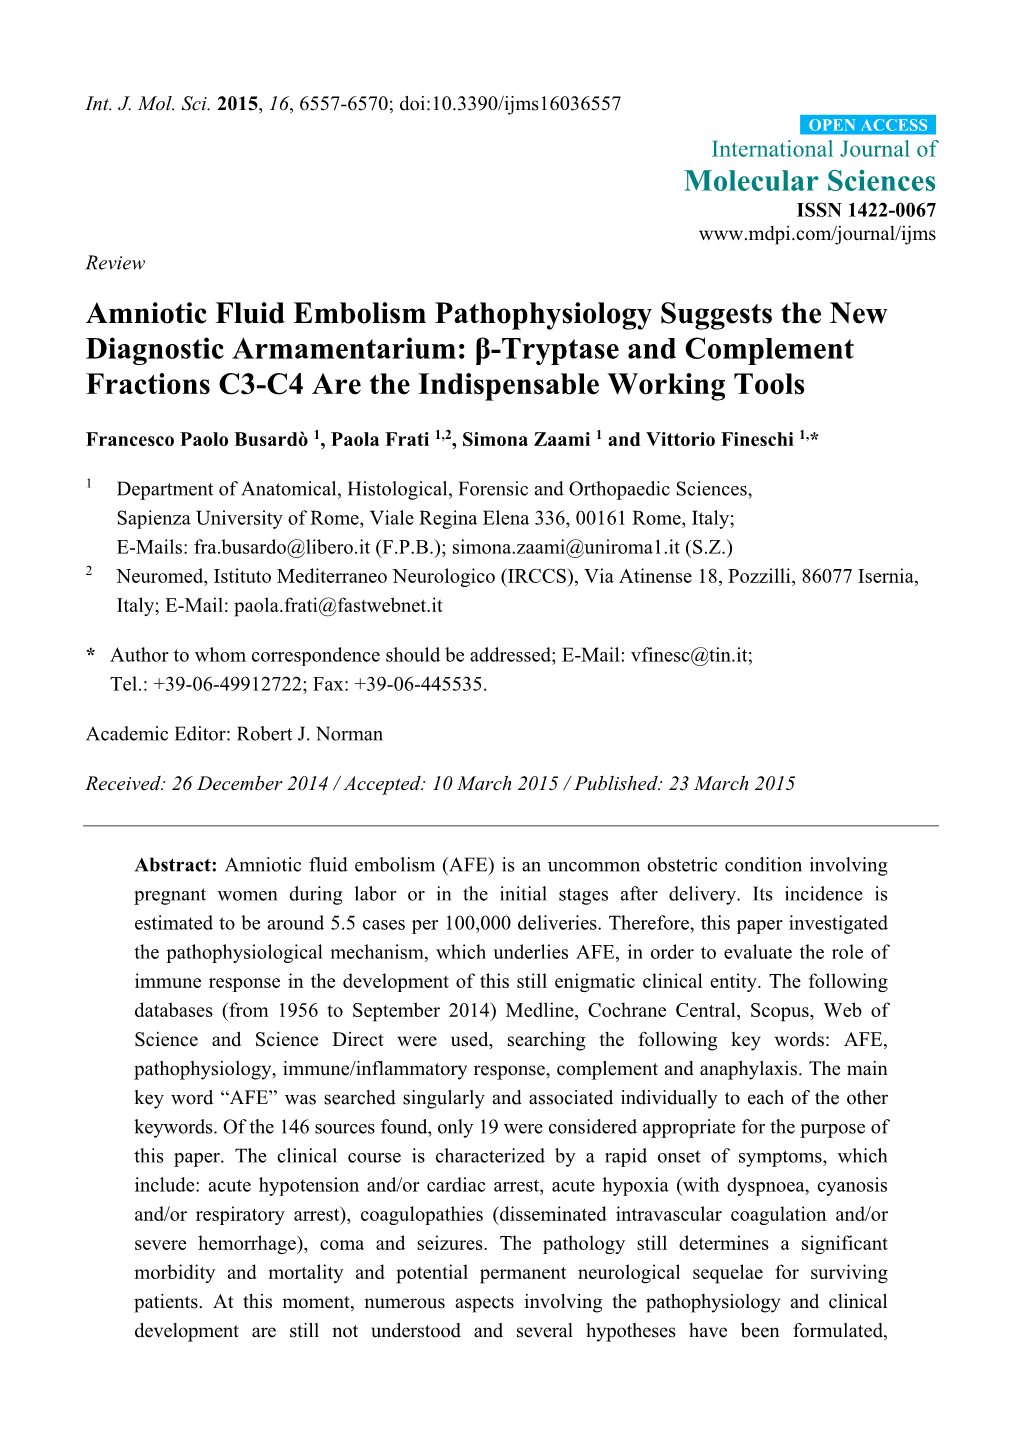 Β-Tryptase and Complement Fractions C3-C4 Are the Indispensable Working Tools